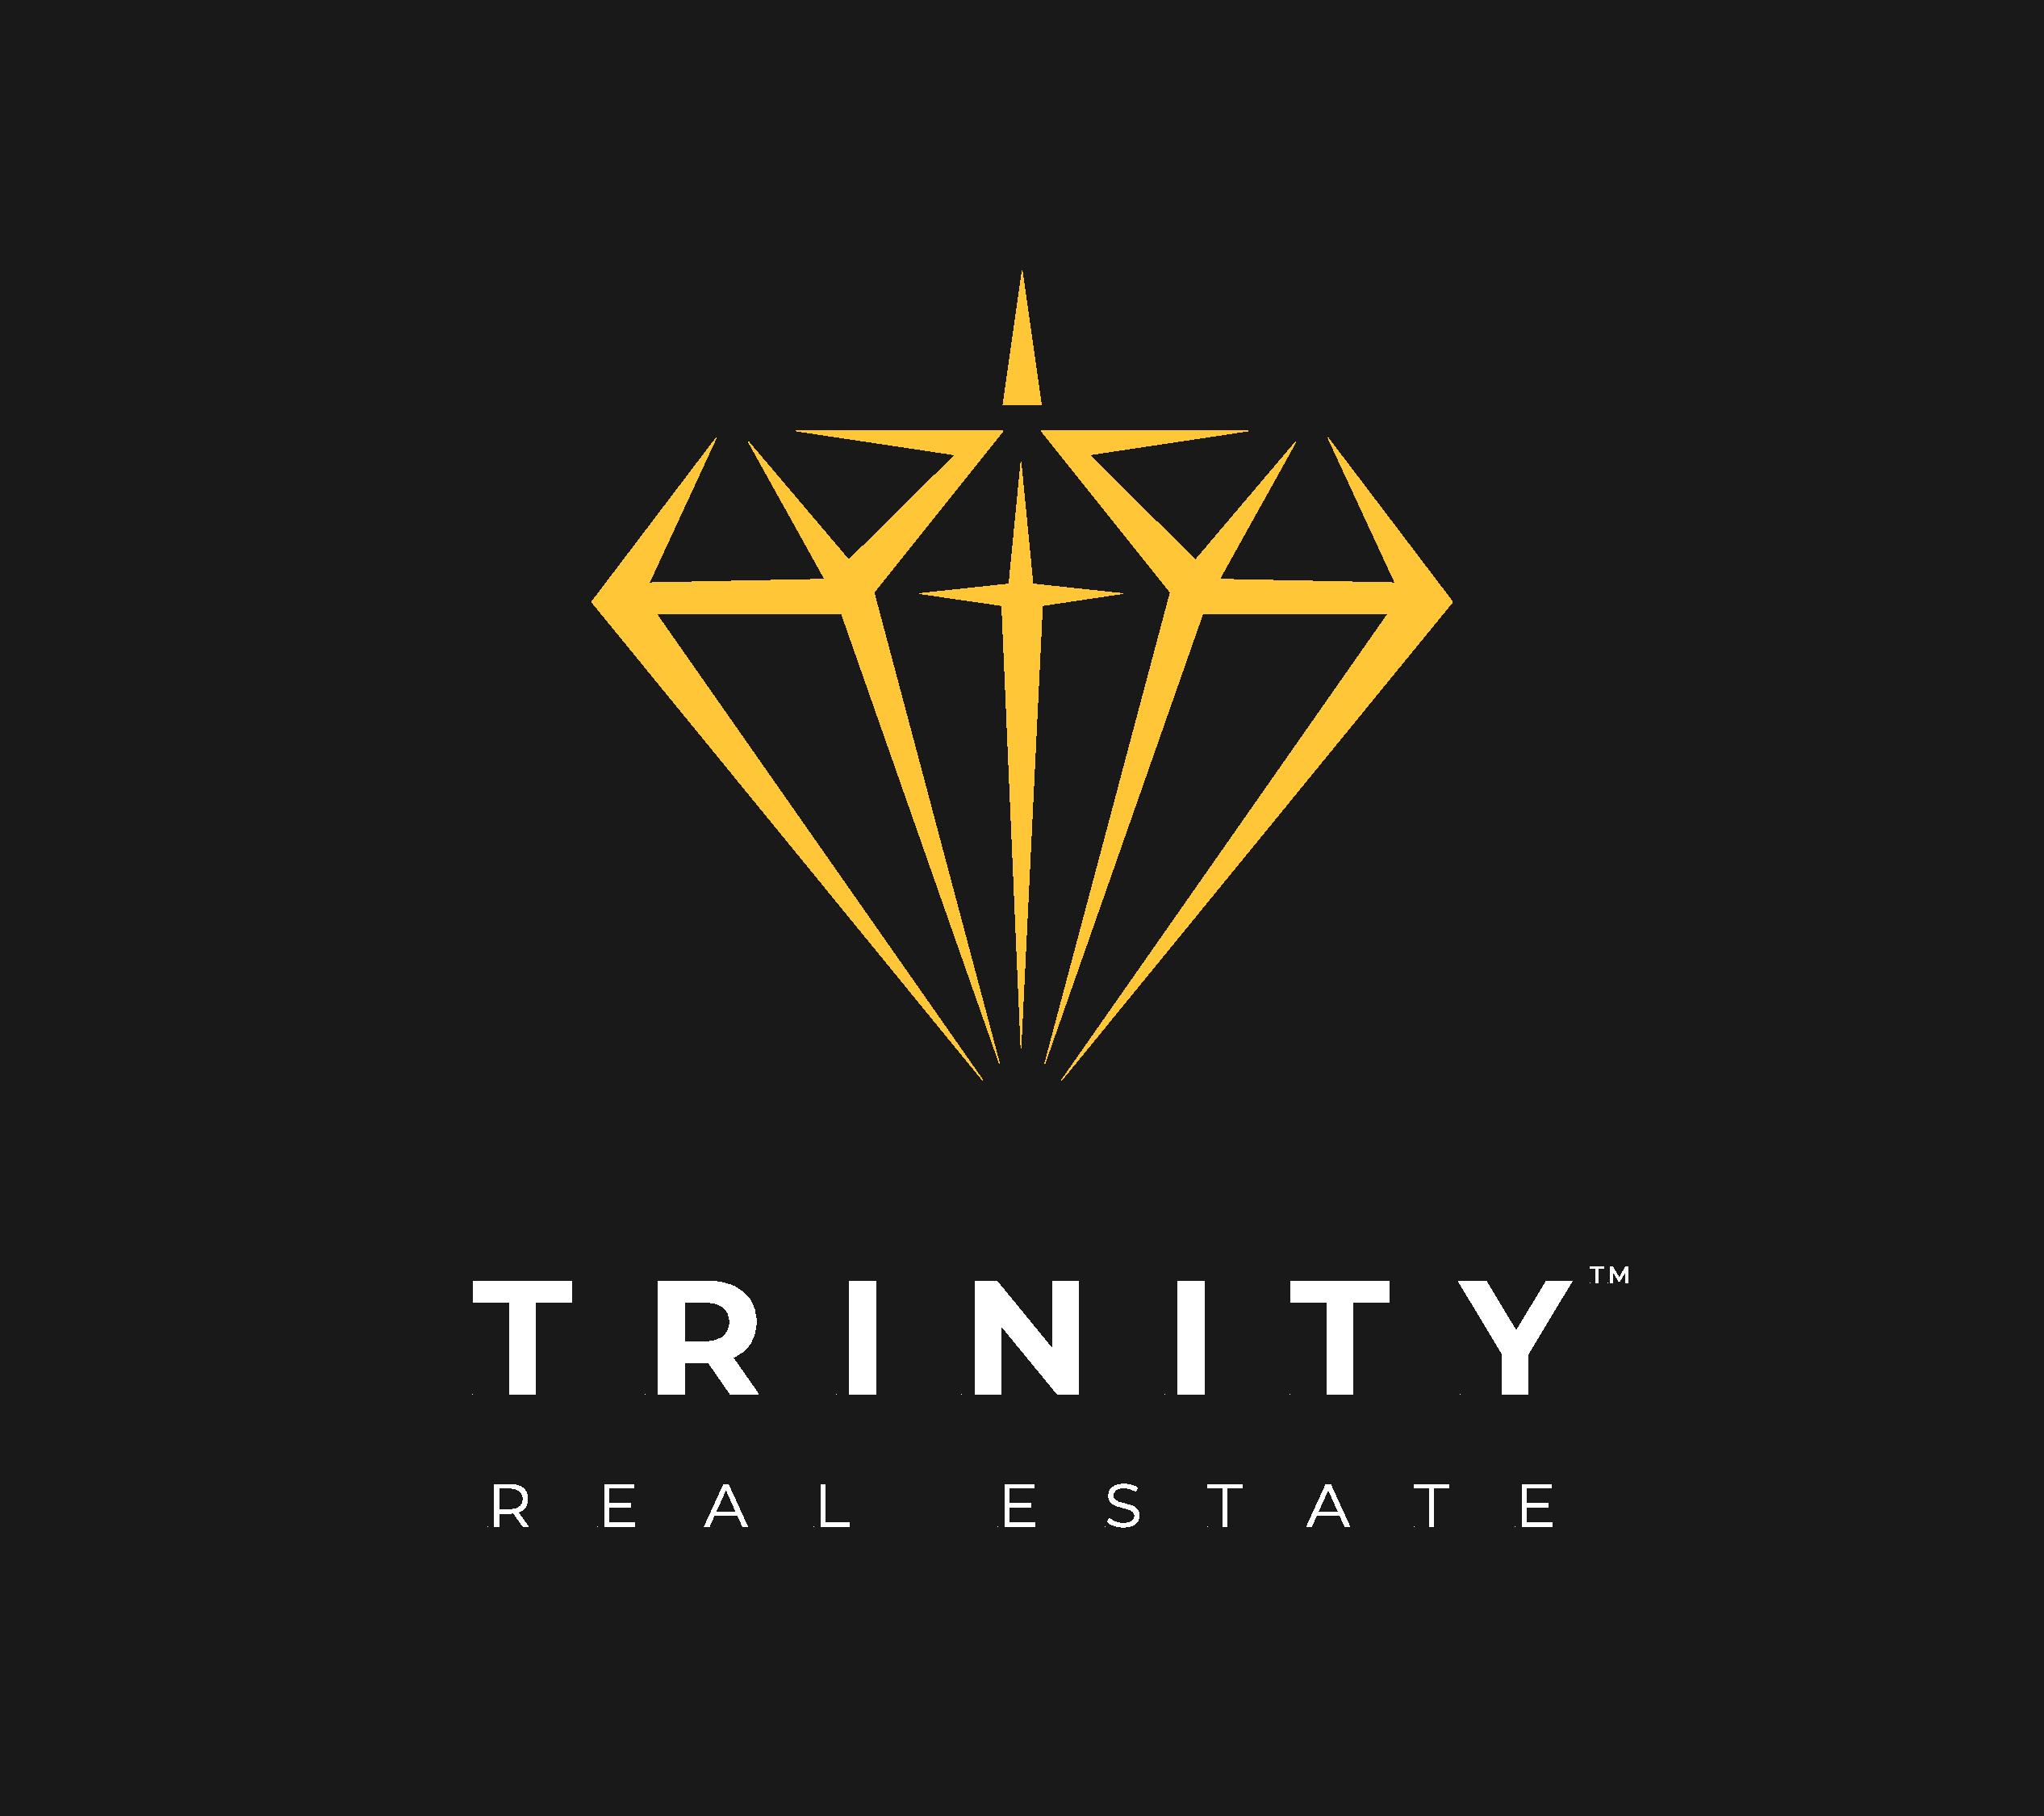 Trinity Real Estate LLC